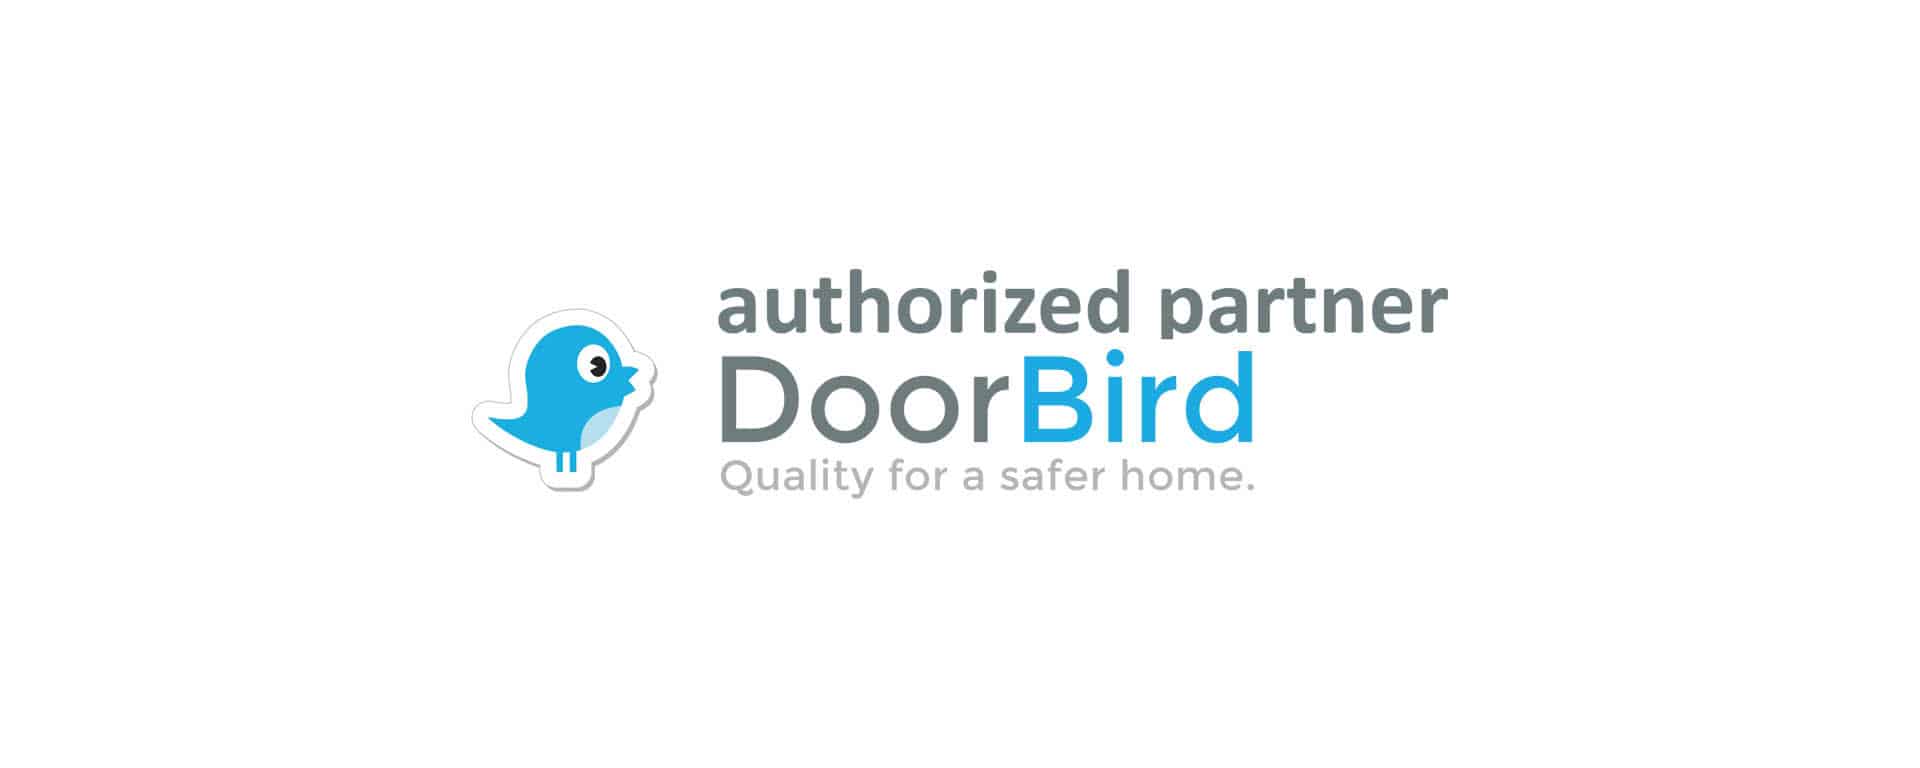 doorbird_authorized_partner_logo